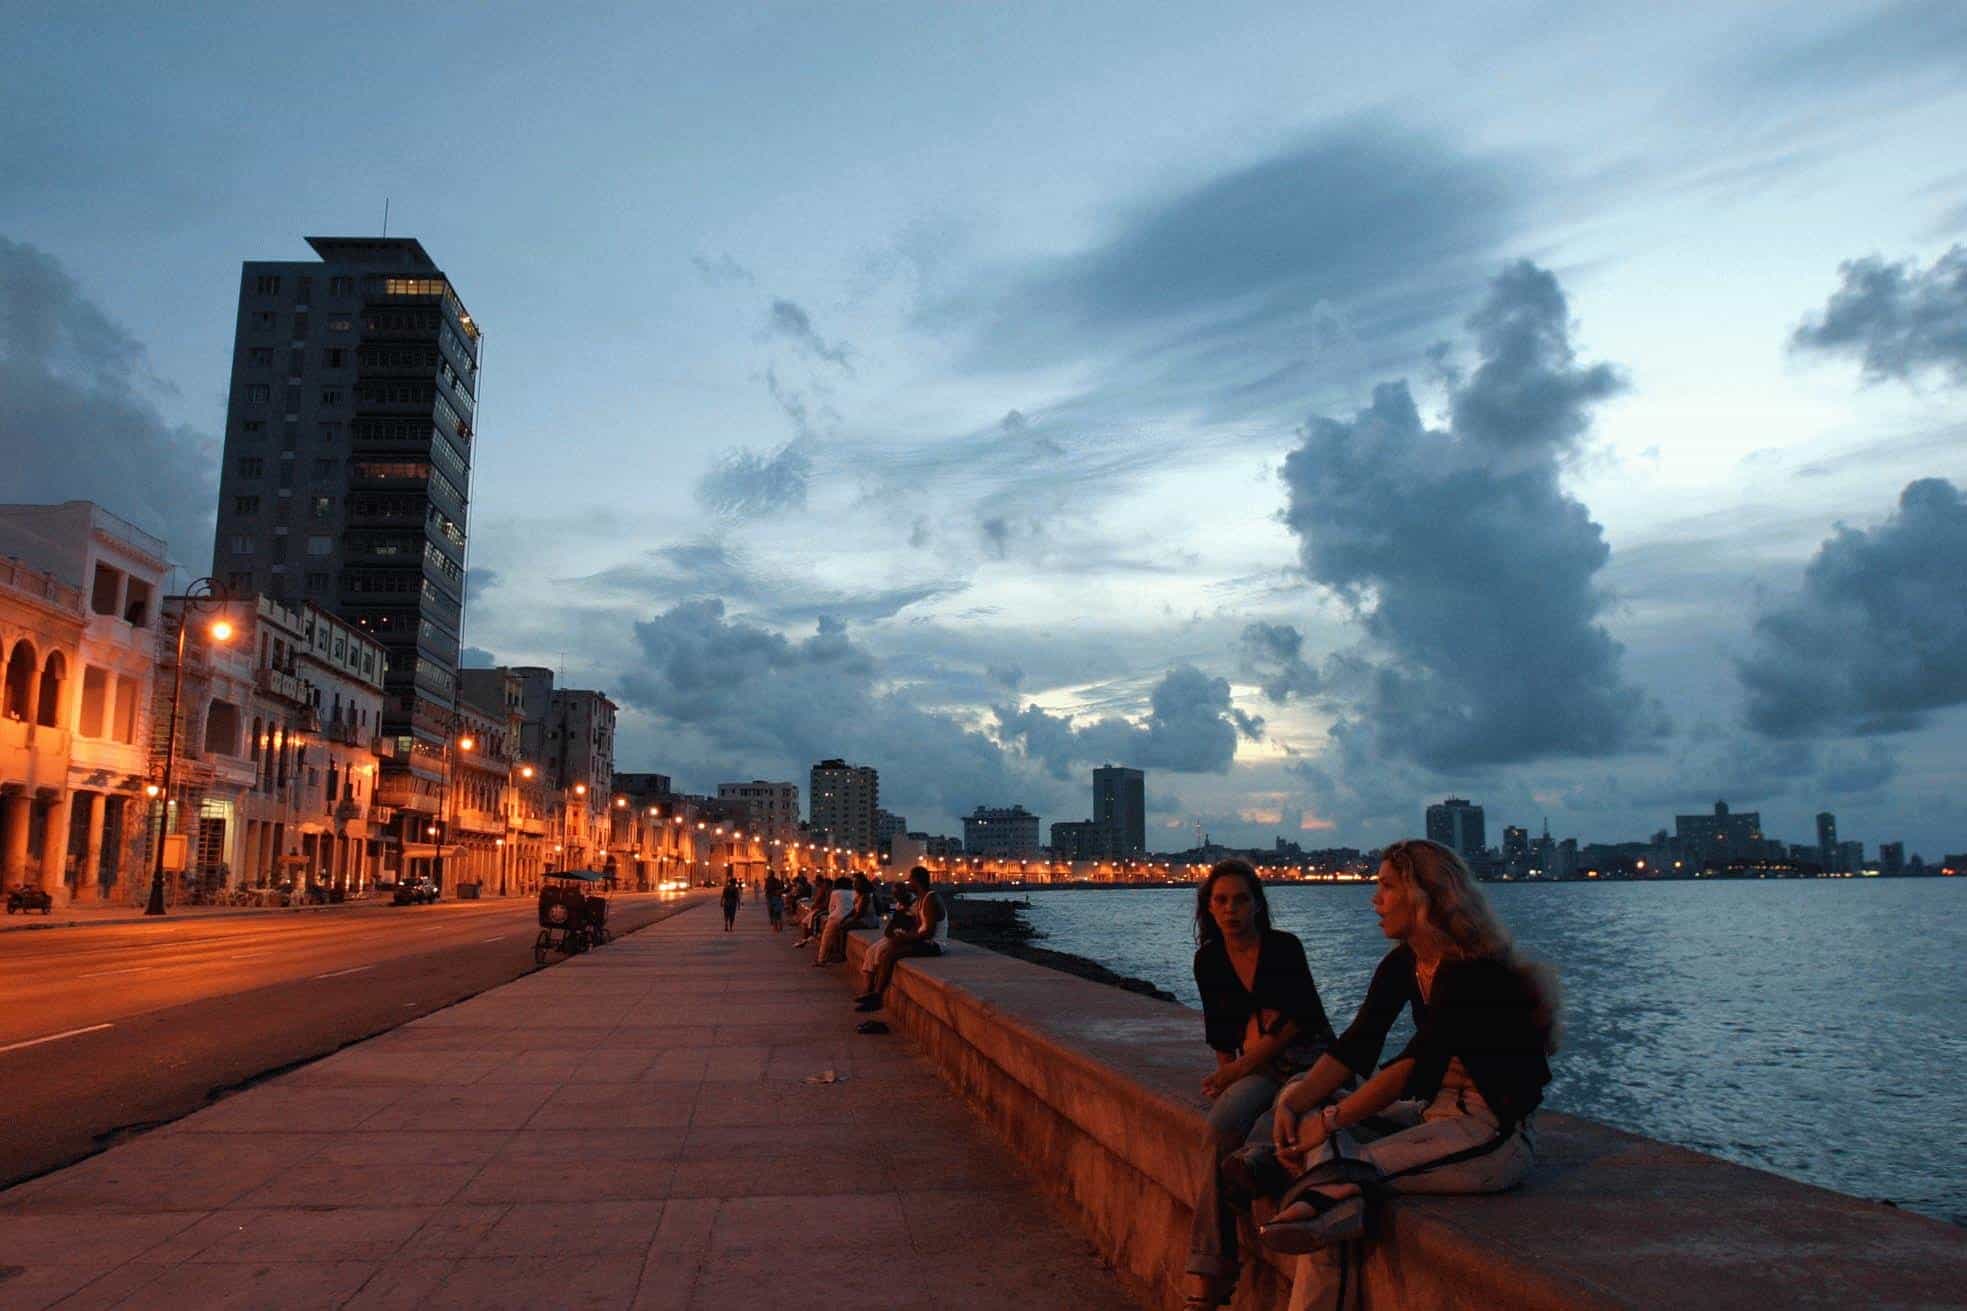 Chicas conversan sentandas en el muro del Malecon durante una bella puesta del sol en La Habana